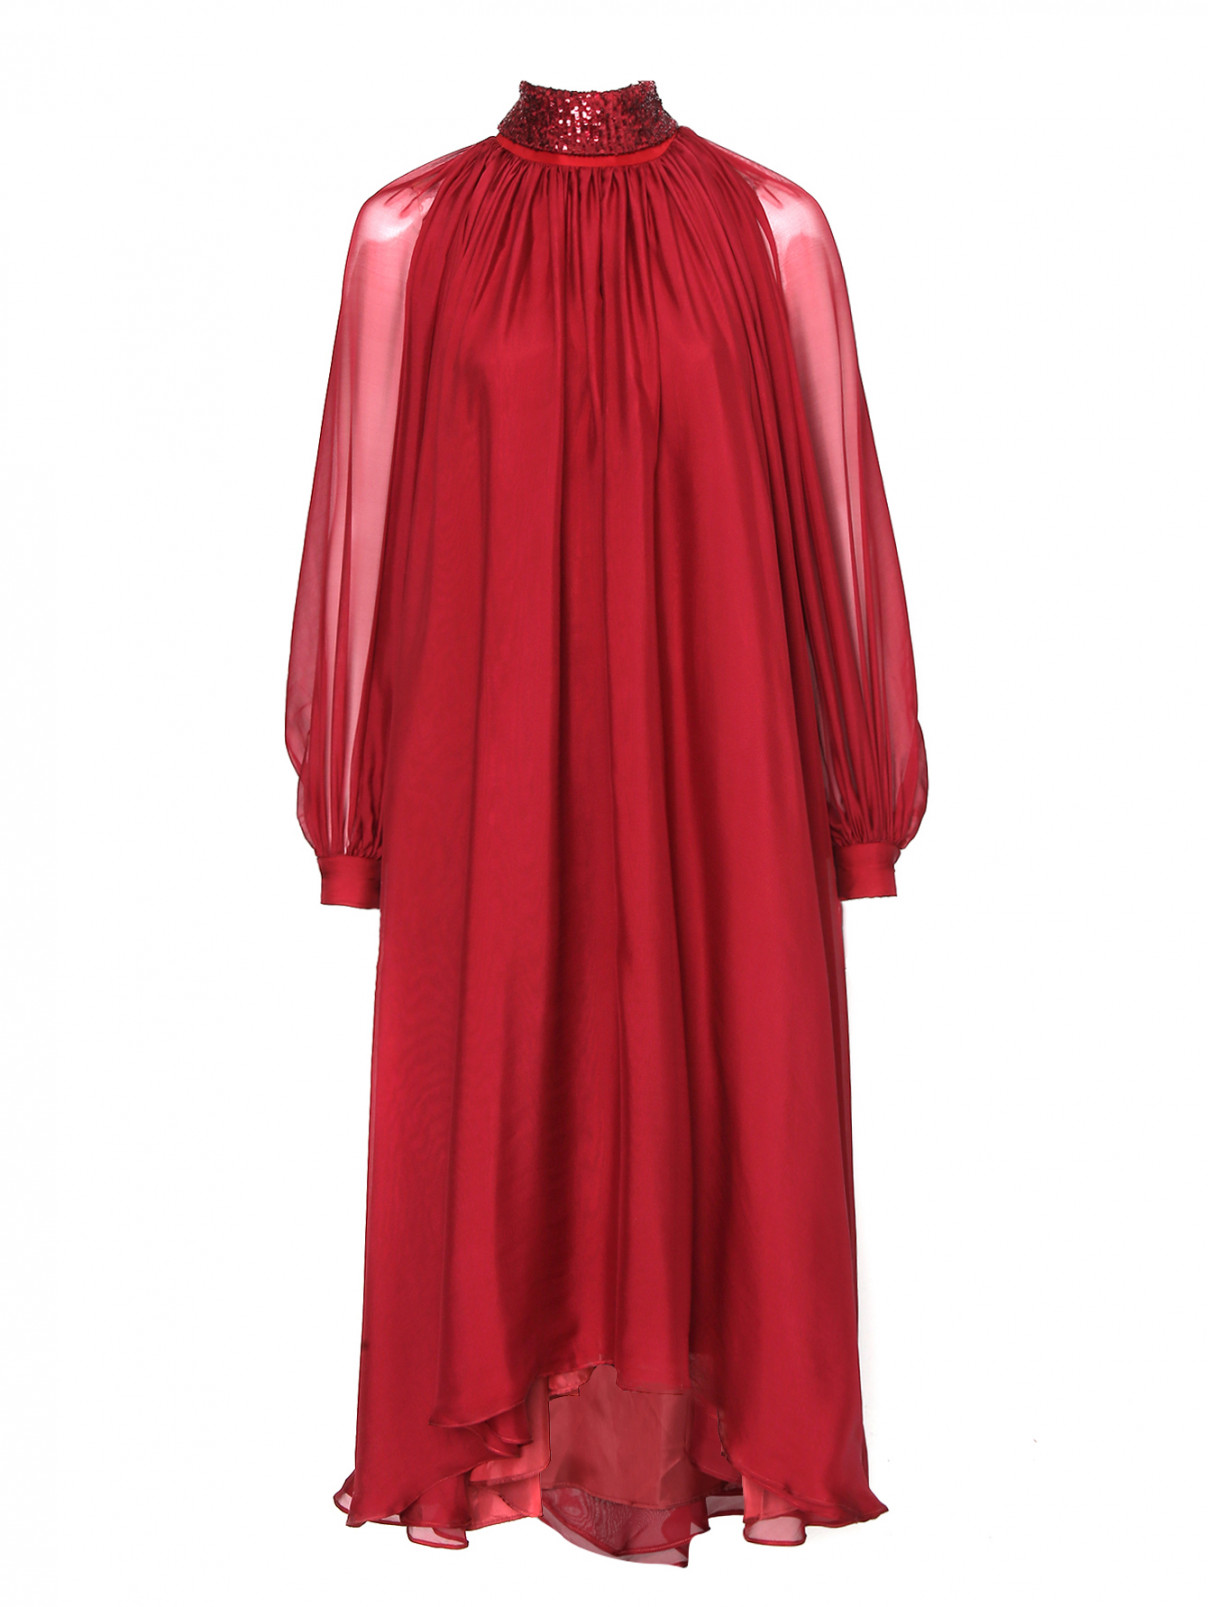 Платье из шелка свободного кроя, декорированное паетками The 2nd skin co.  –  Общий вид  – Цвет:  Красный